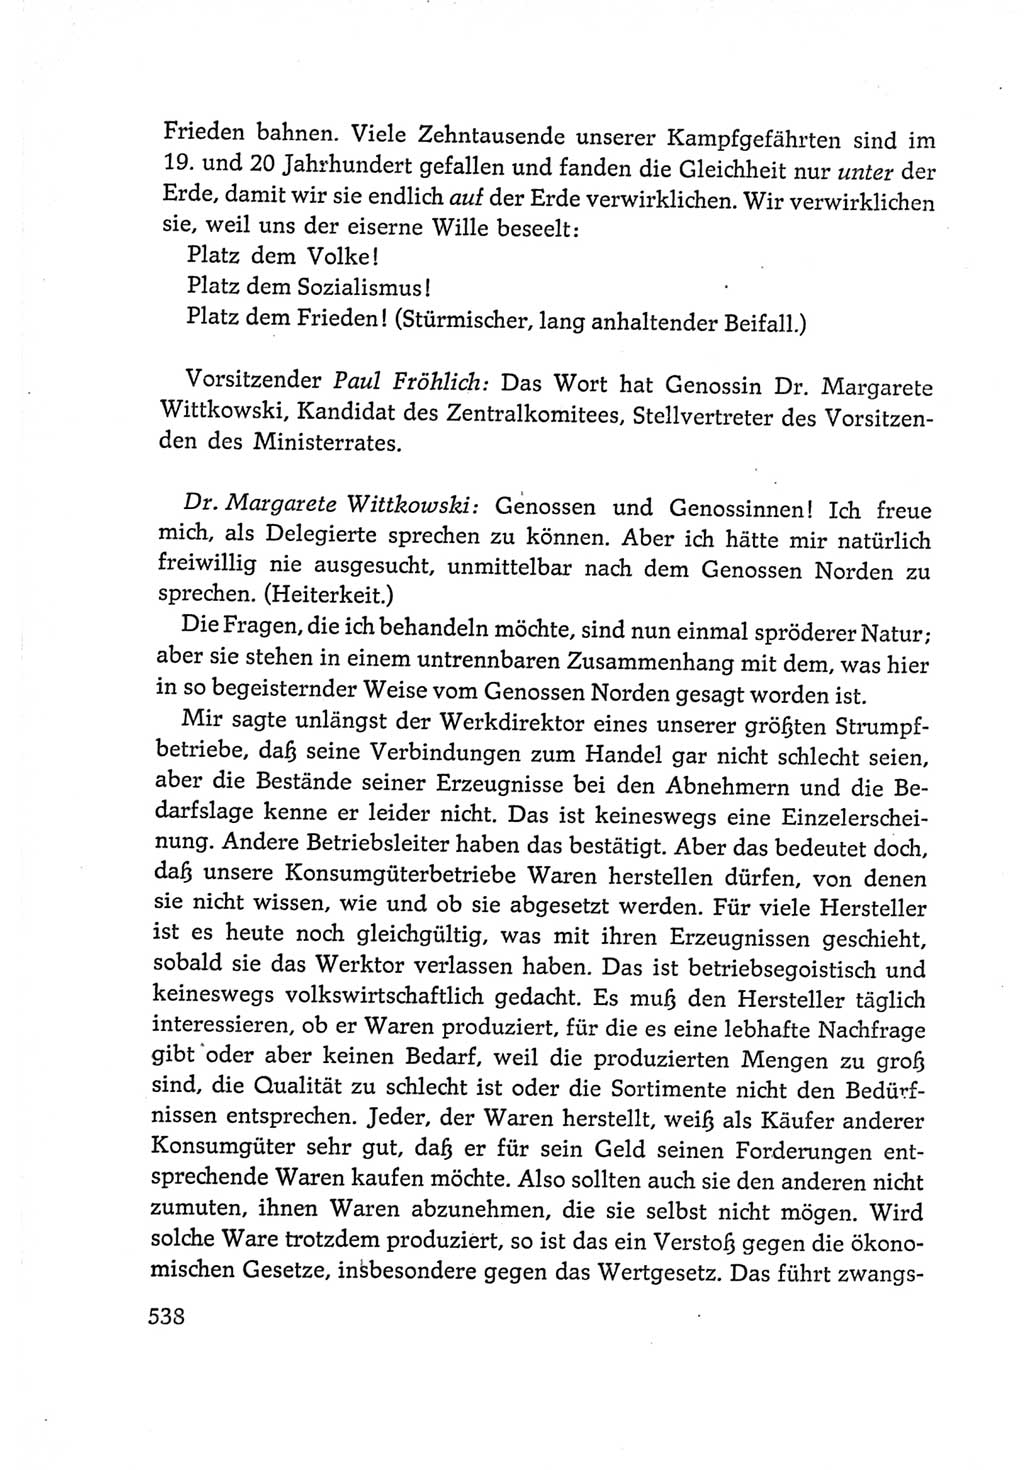 Protokoll der Verhandlungen des Ⅵ. Parteitages der Sozialistischen Einheitspartei Deutschlands (SED) [Deutsche Demokratische Republik (DDR)] 1963, Band Ⅰ, Seite 538 (Prot. Verh. Ⅵ. PT SED DDR 1963, Bd. Ⅰ, S. 538)